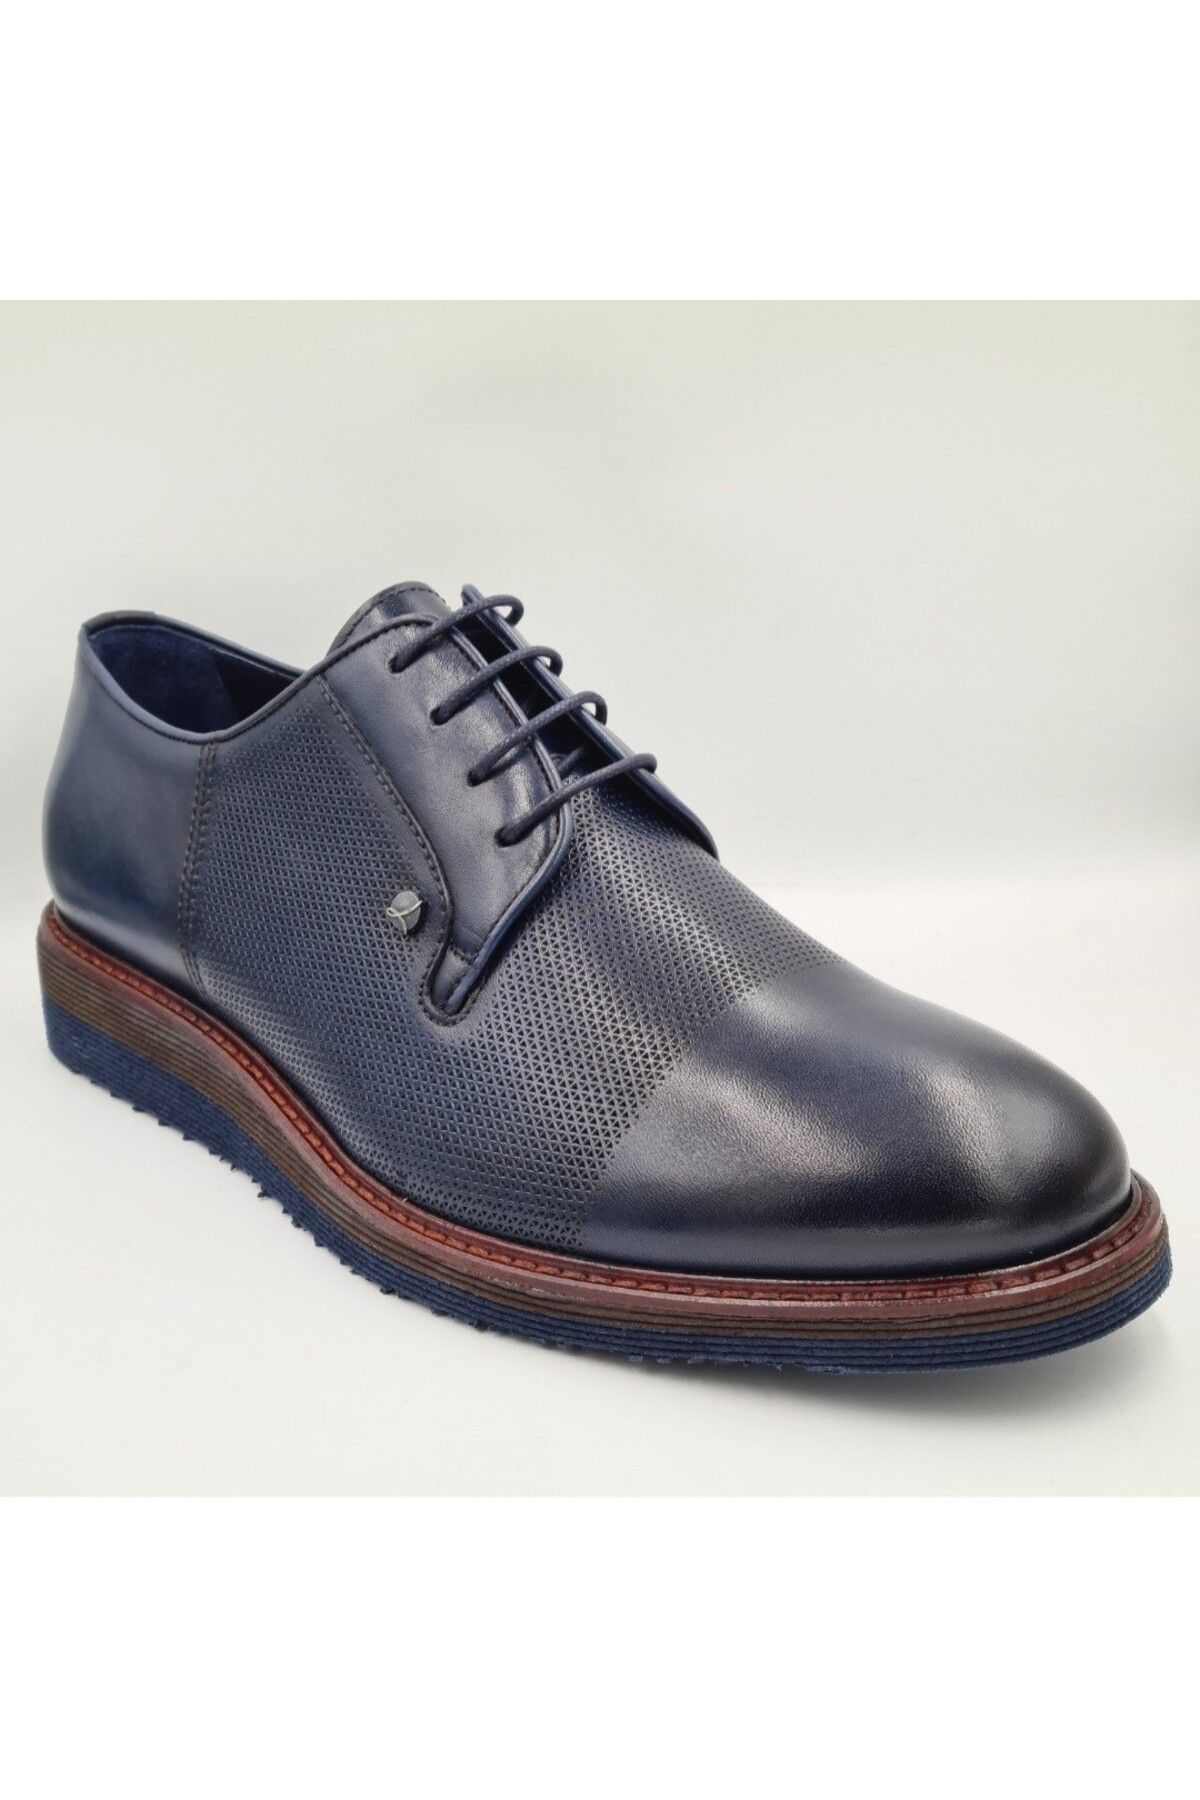 Libero L3052 Lacivert Hakiki Deri Eva Taban Erkek Günlük Klasik Casual Ayakkabı